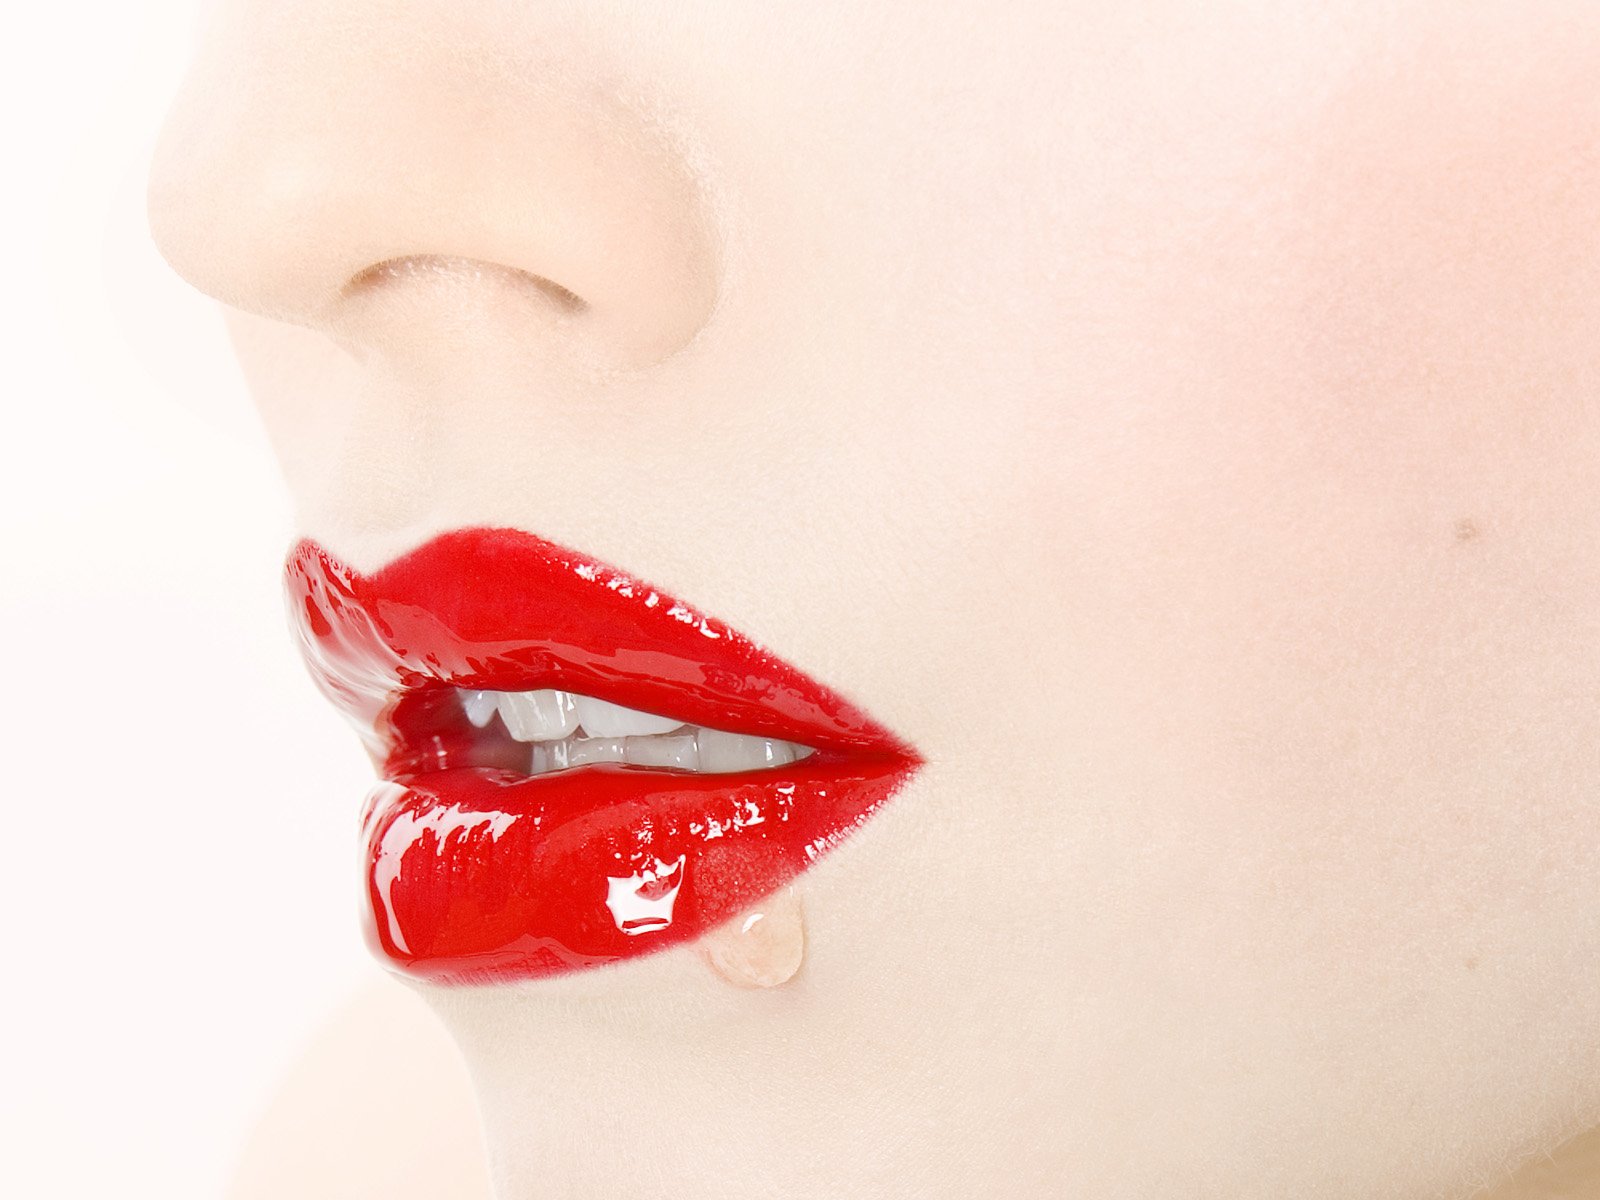 Белая губная помада. Женские губы. Красивые женские губы. Красивые красные губы. Помада для губ.